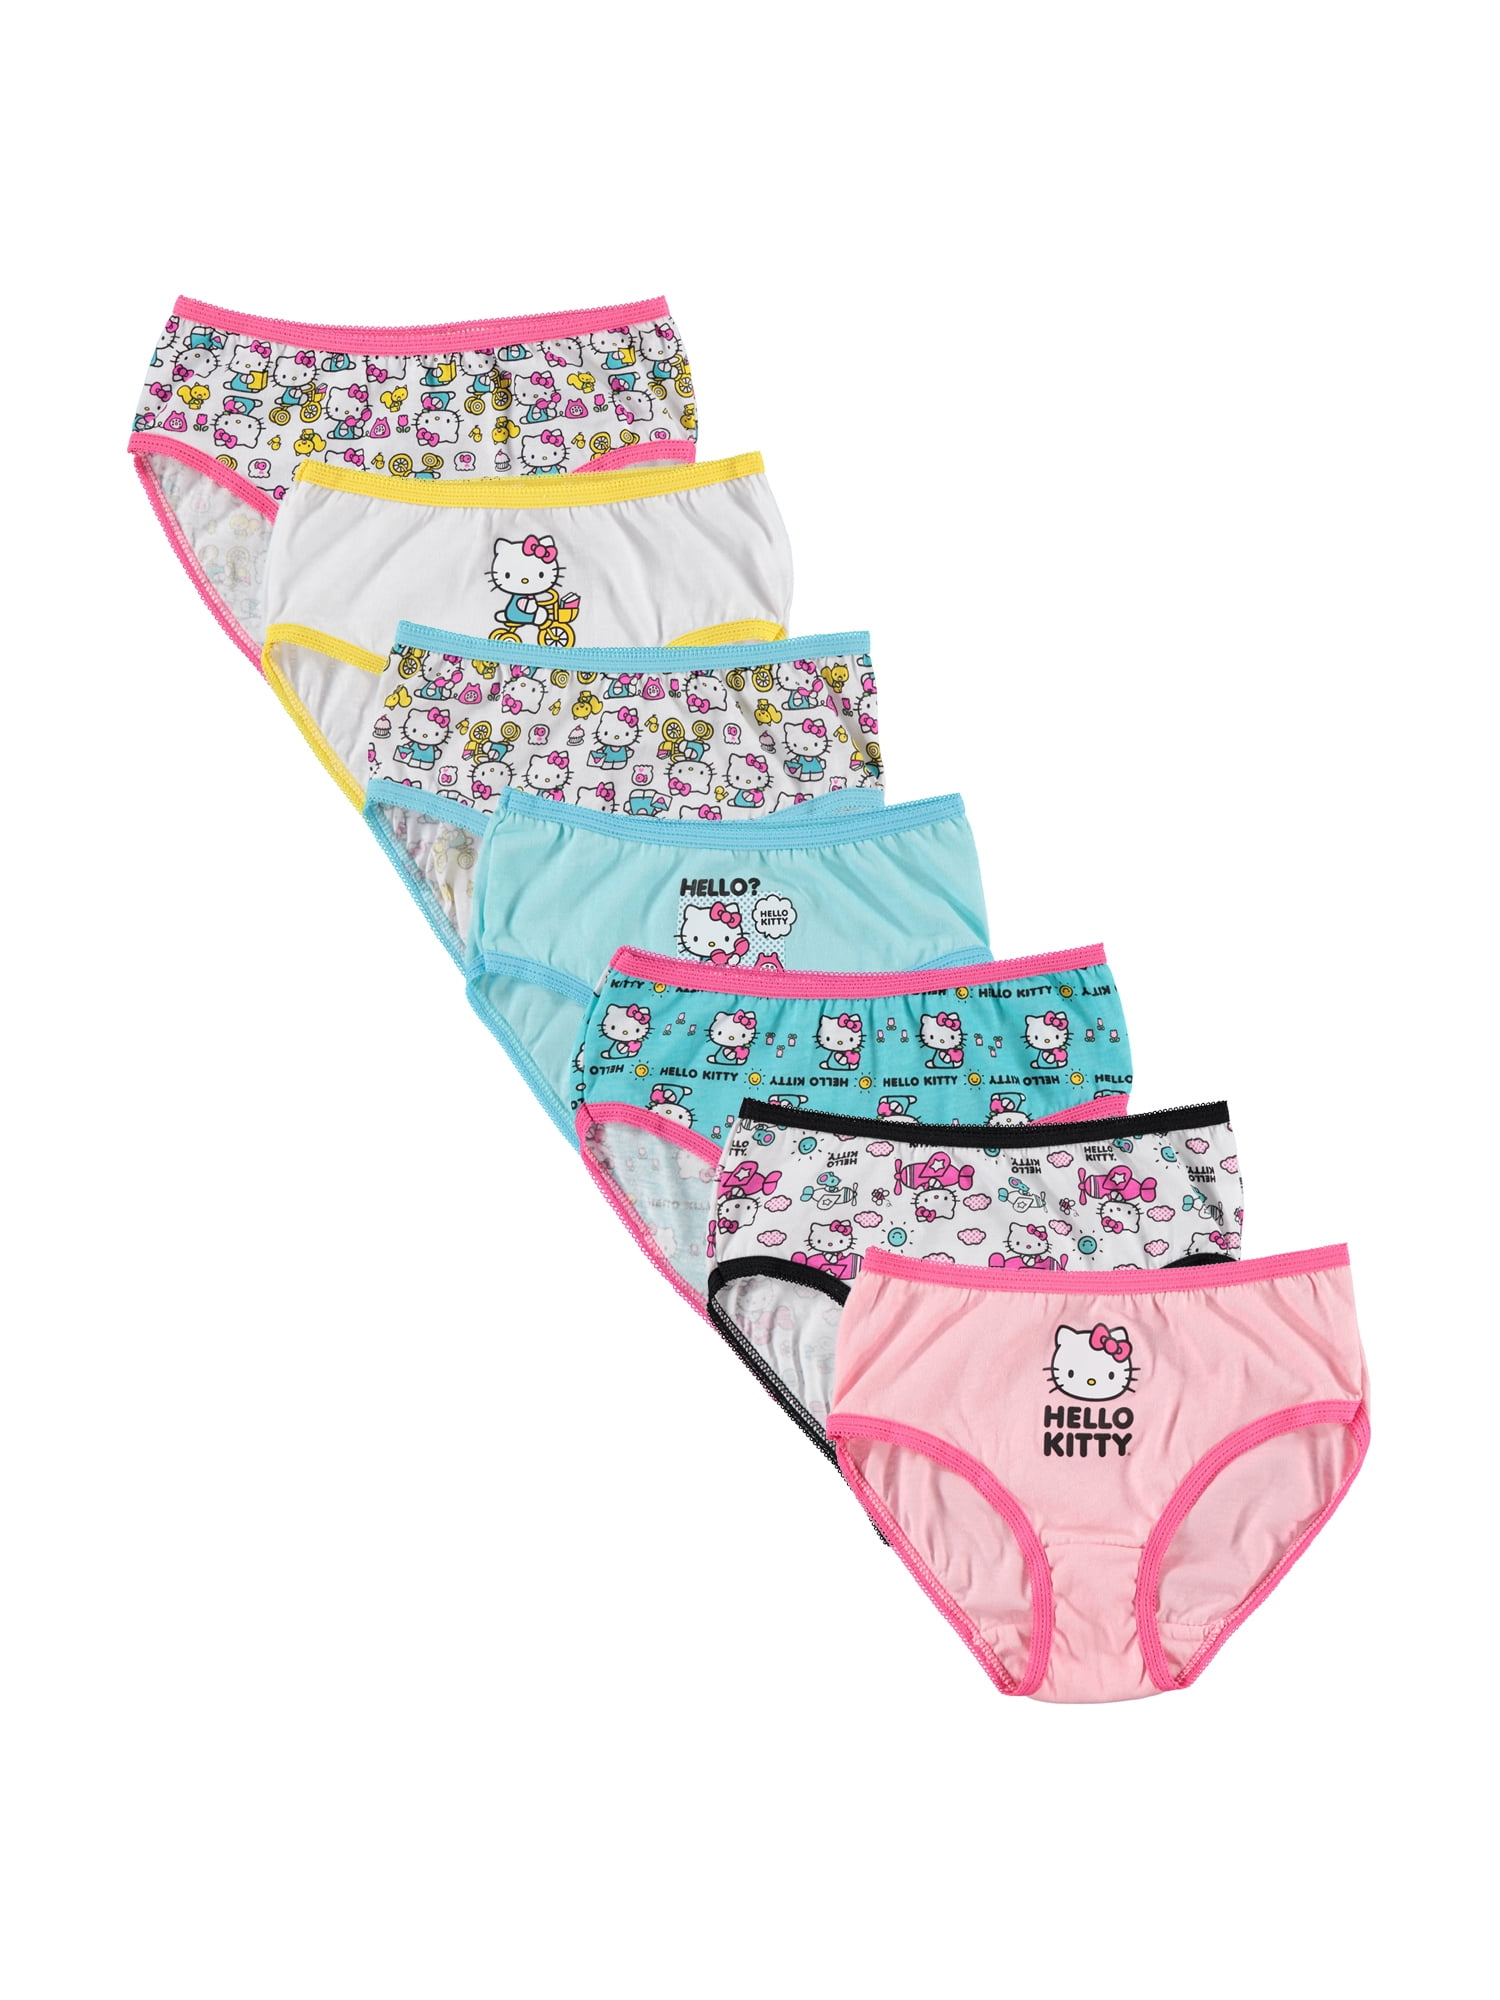 Hello Kitty Little Girls Underwear, 7 Pack, Sizes 4-6